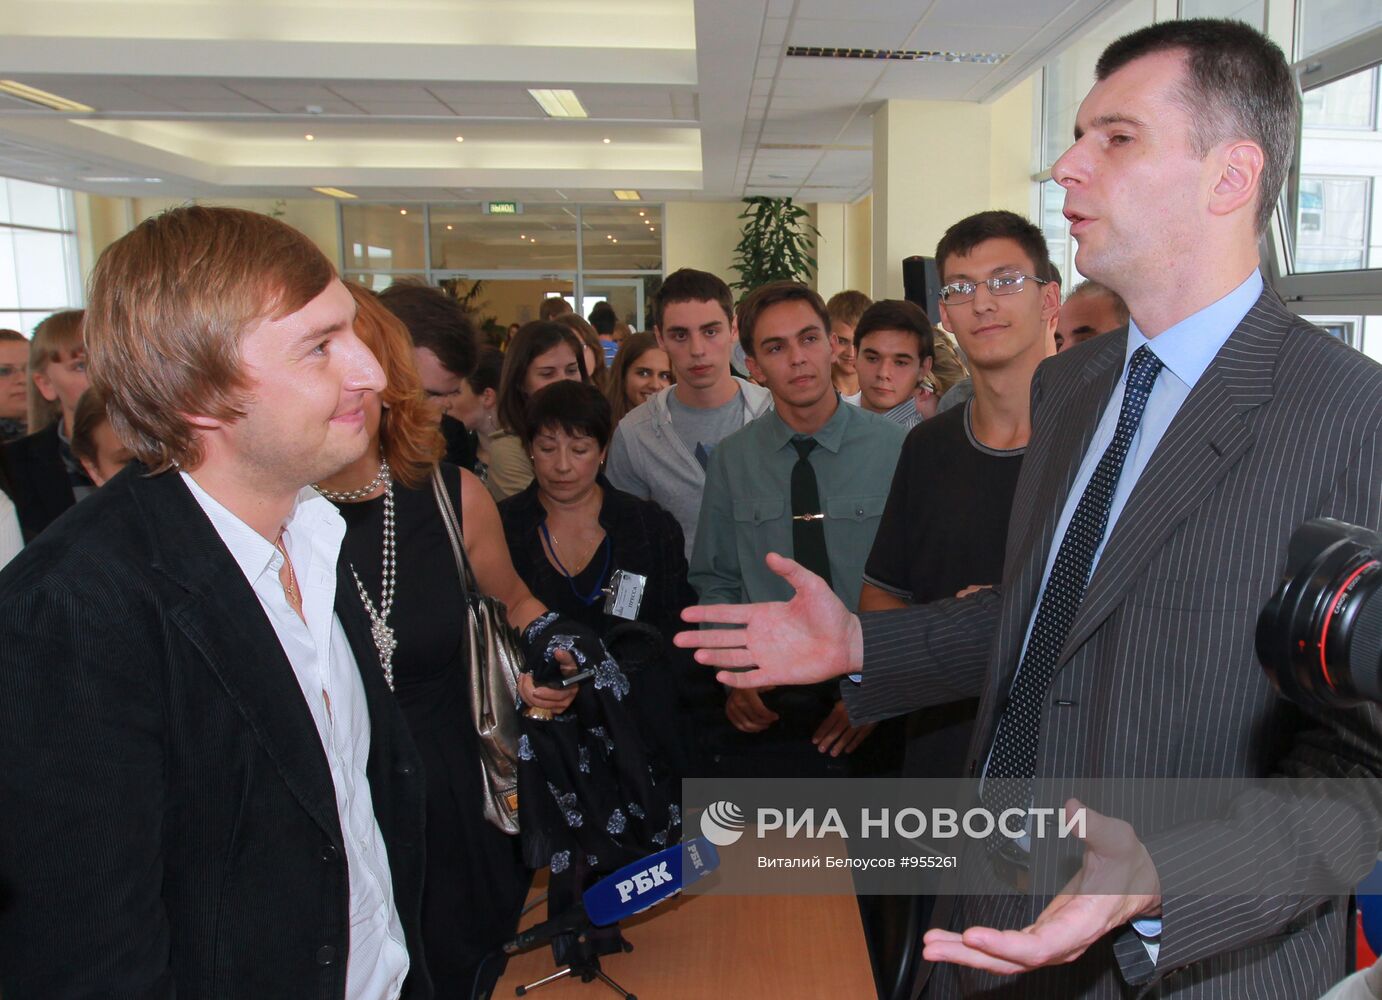 Михаил Прохоров выступил перед студентами МГУ